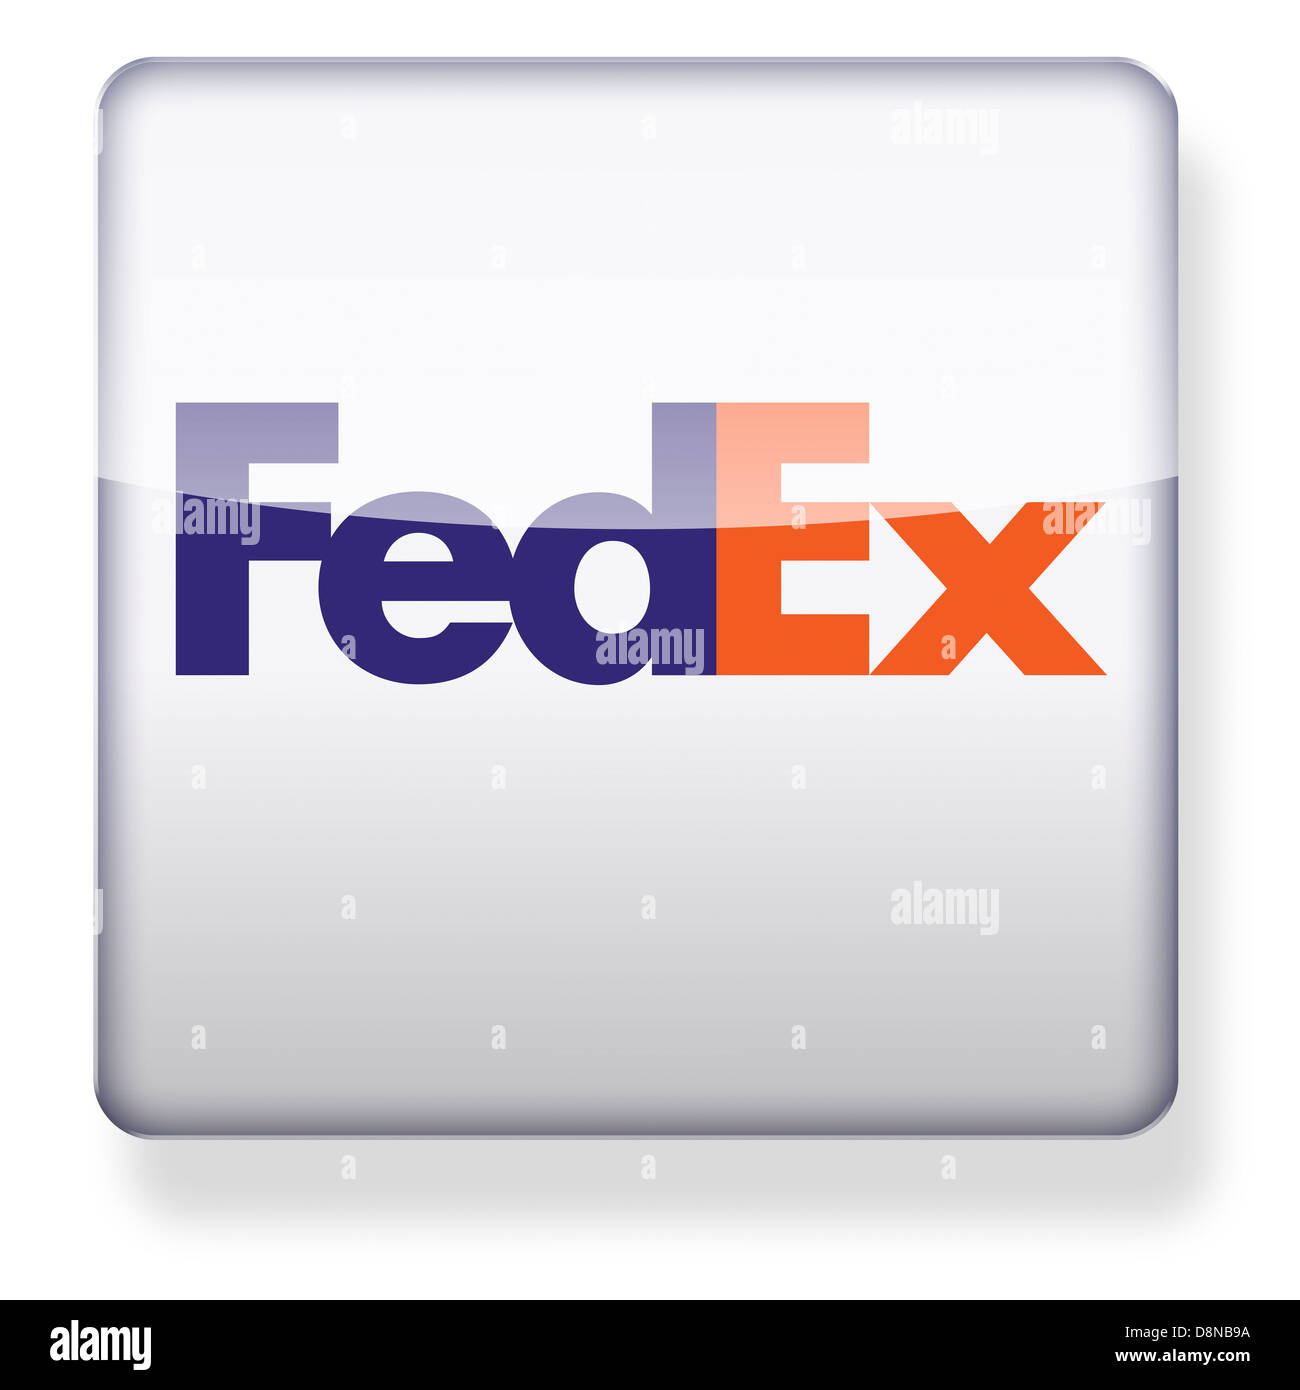 Logotipo de Fedex como el icono de una aplicación. Trazado de recorte incluido. Foto de stock